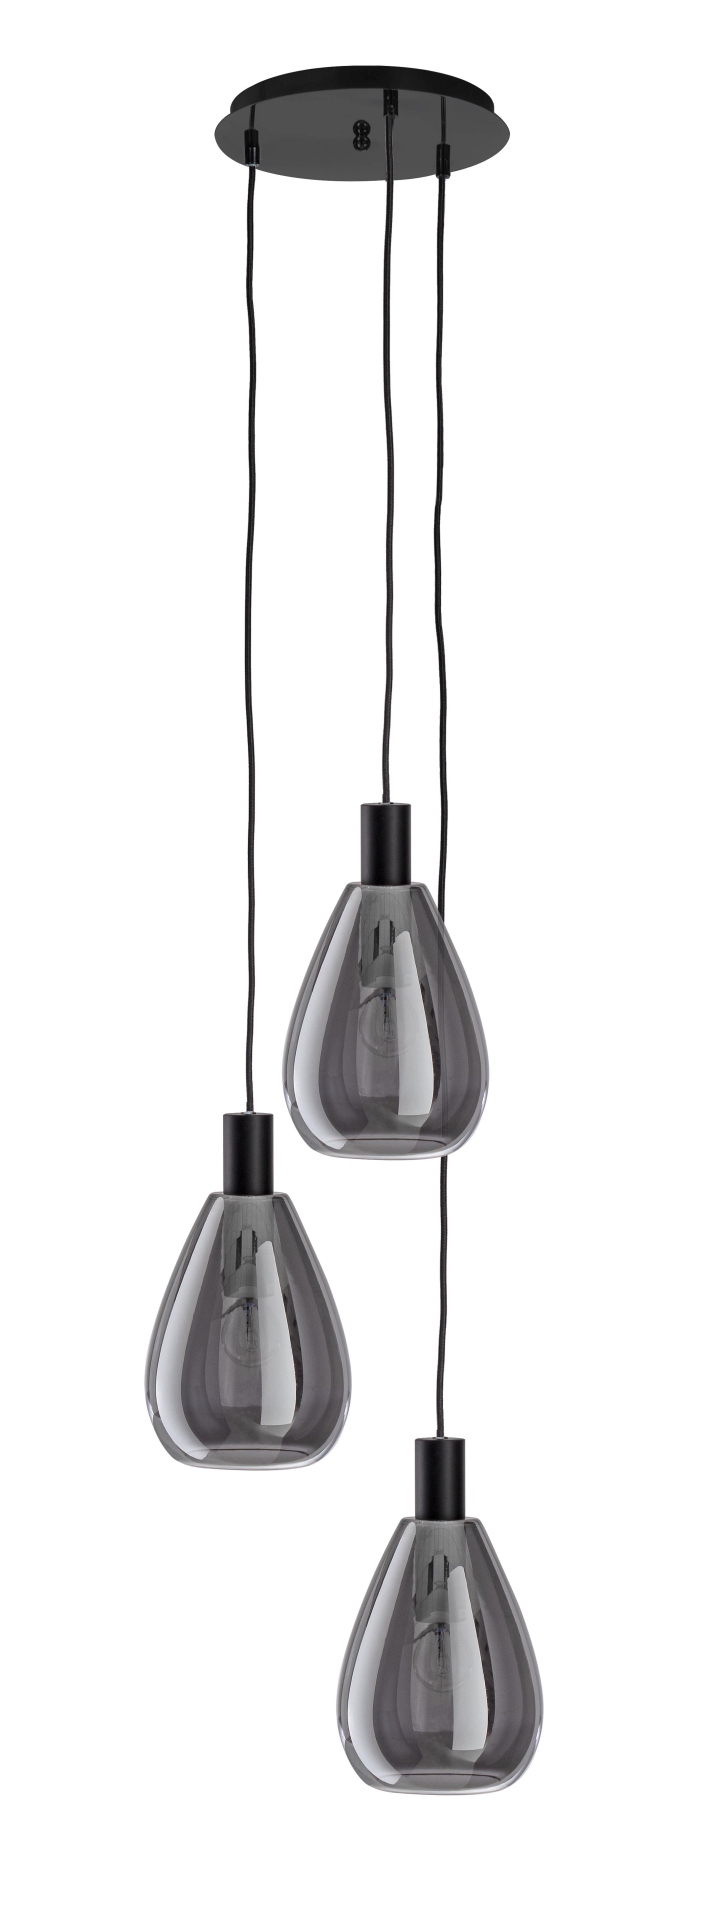 Die Hängeleuchte Glaring überzeugt mit ihrem modernen Design. Gefertigt wurde sie aus Metall, welches einen schwarzen Farbton besitzt. Die Lampenschirme sind aus Glas und sind abgedunkelt. Die Lampe besitzt eine Höhe von 160 cm.